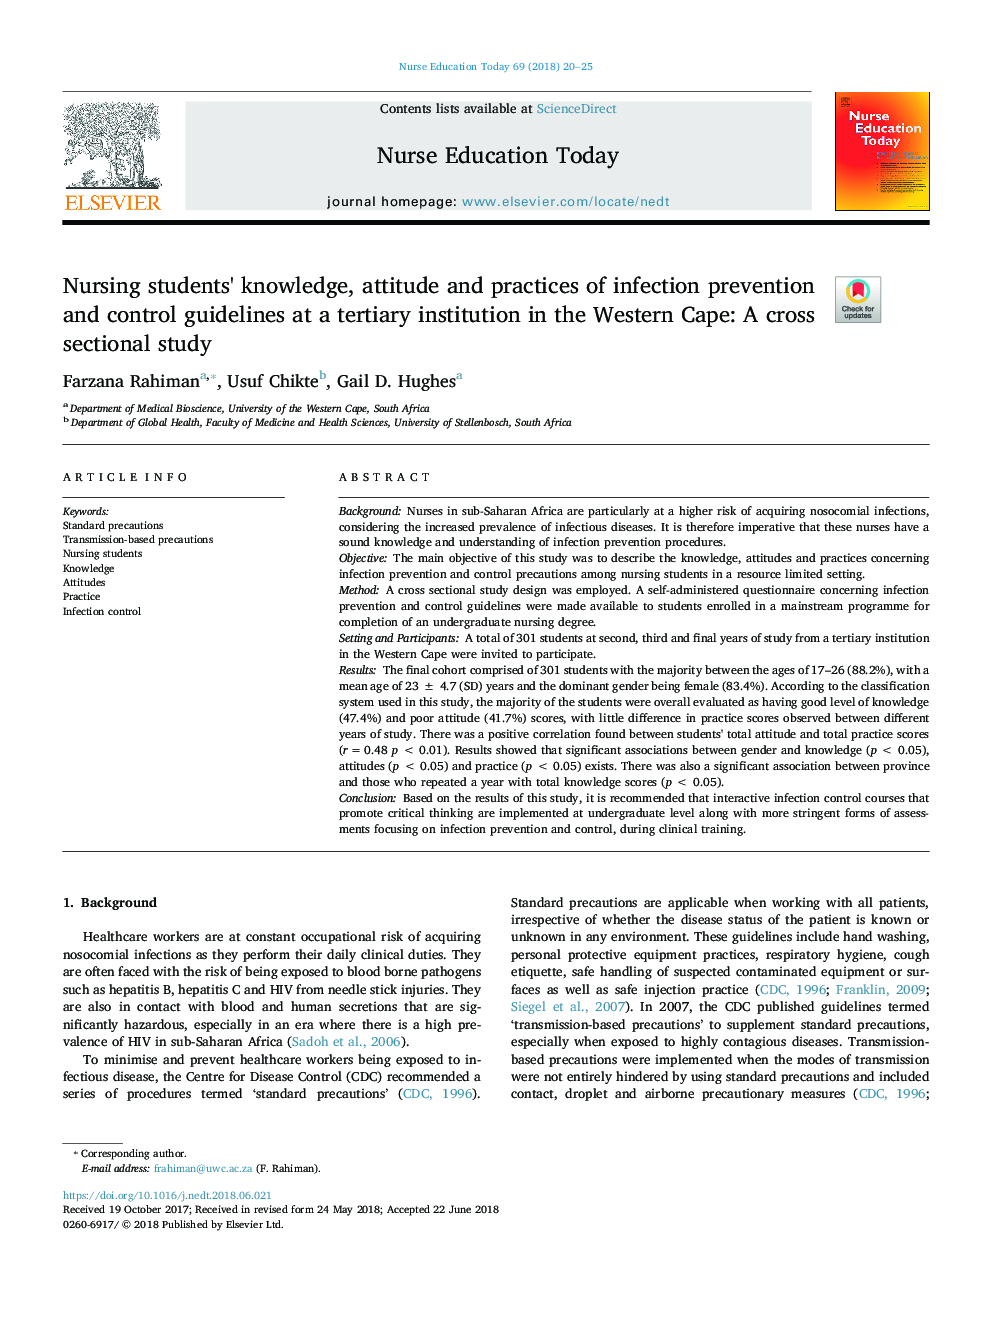 دانش، نگرش و عملکرد دانشجویان پرستاری از دستورالعمل های پیشگیری و کنترل عفونت در موسسه عالی در کیپ غربی: یک مطالعه مقطعی 